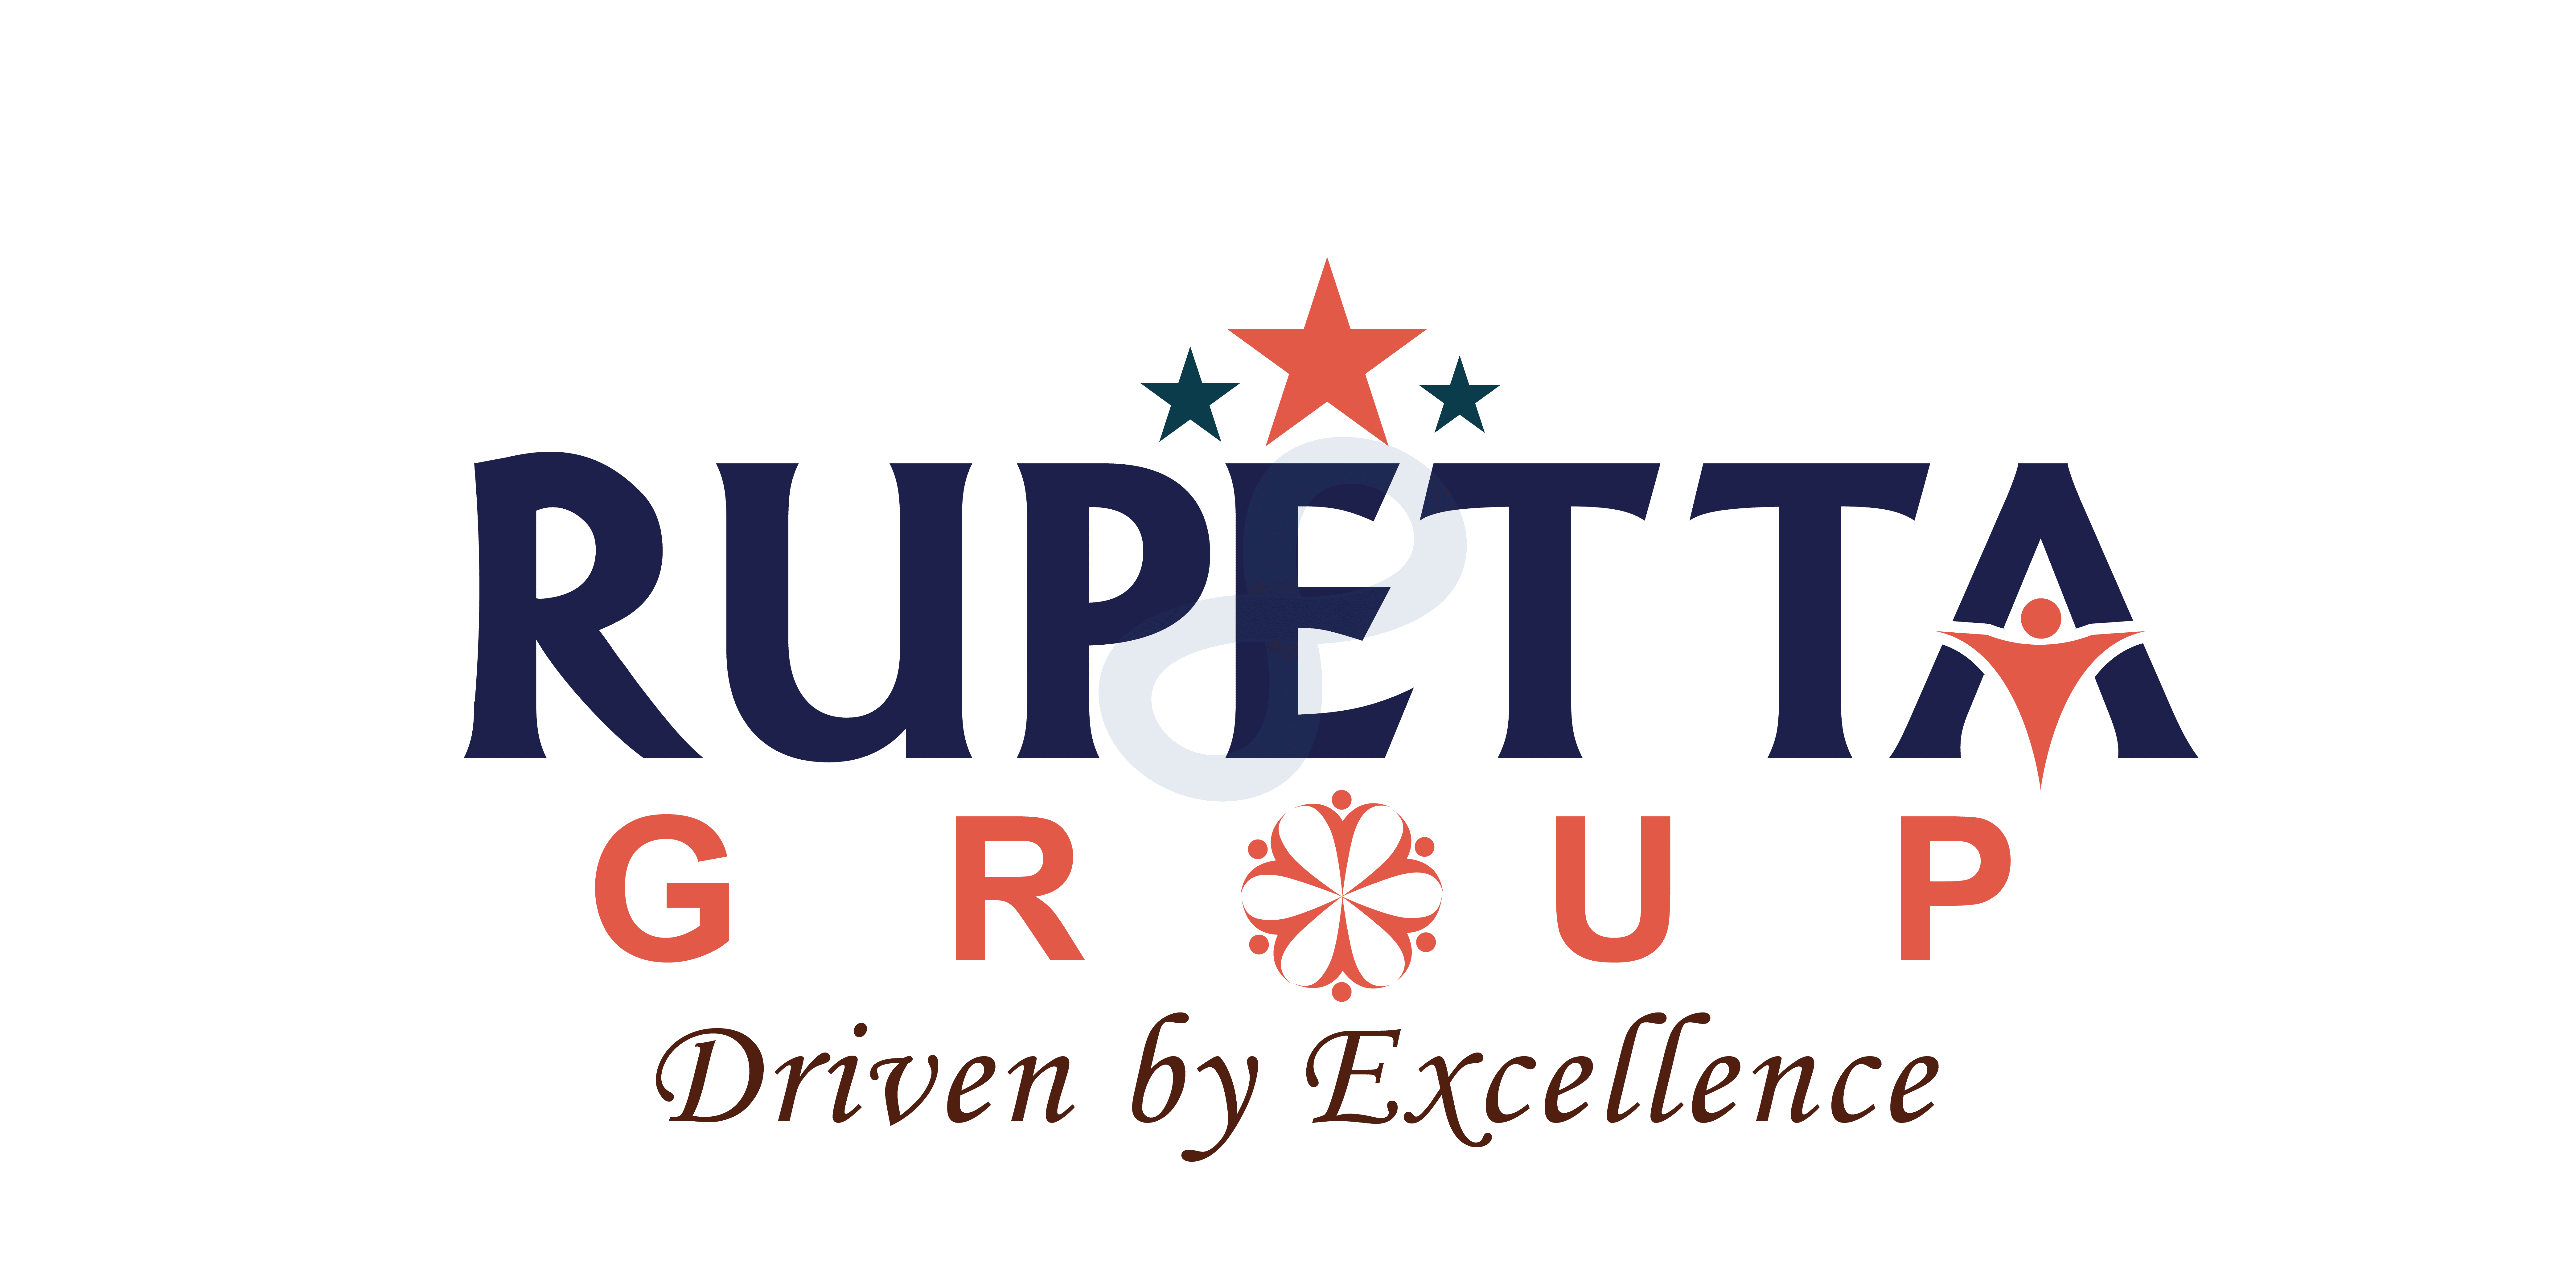 Rupetta Group Logo PNG Format